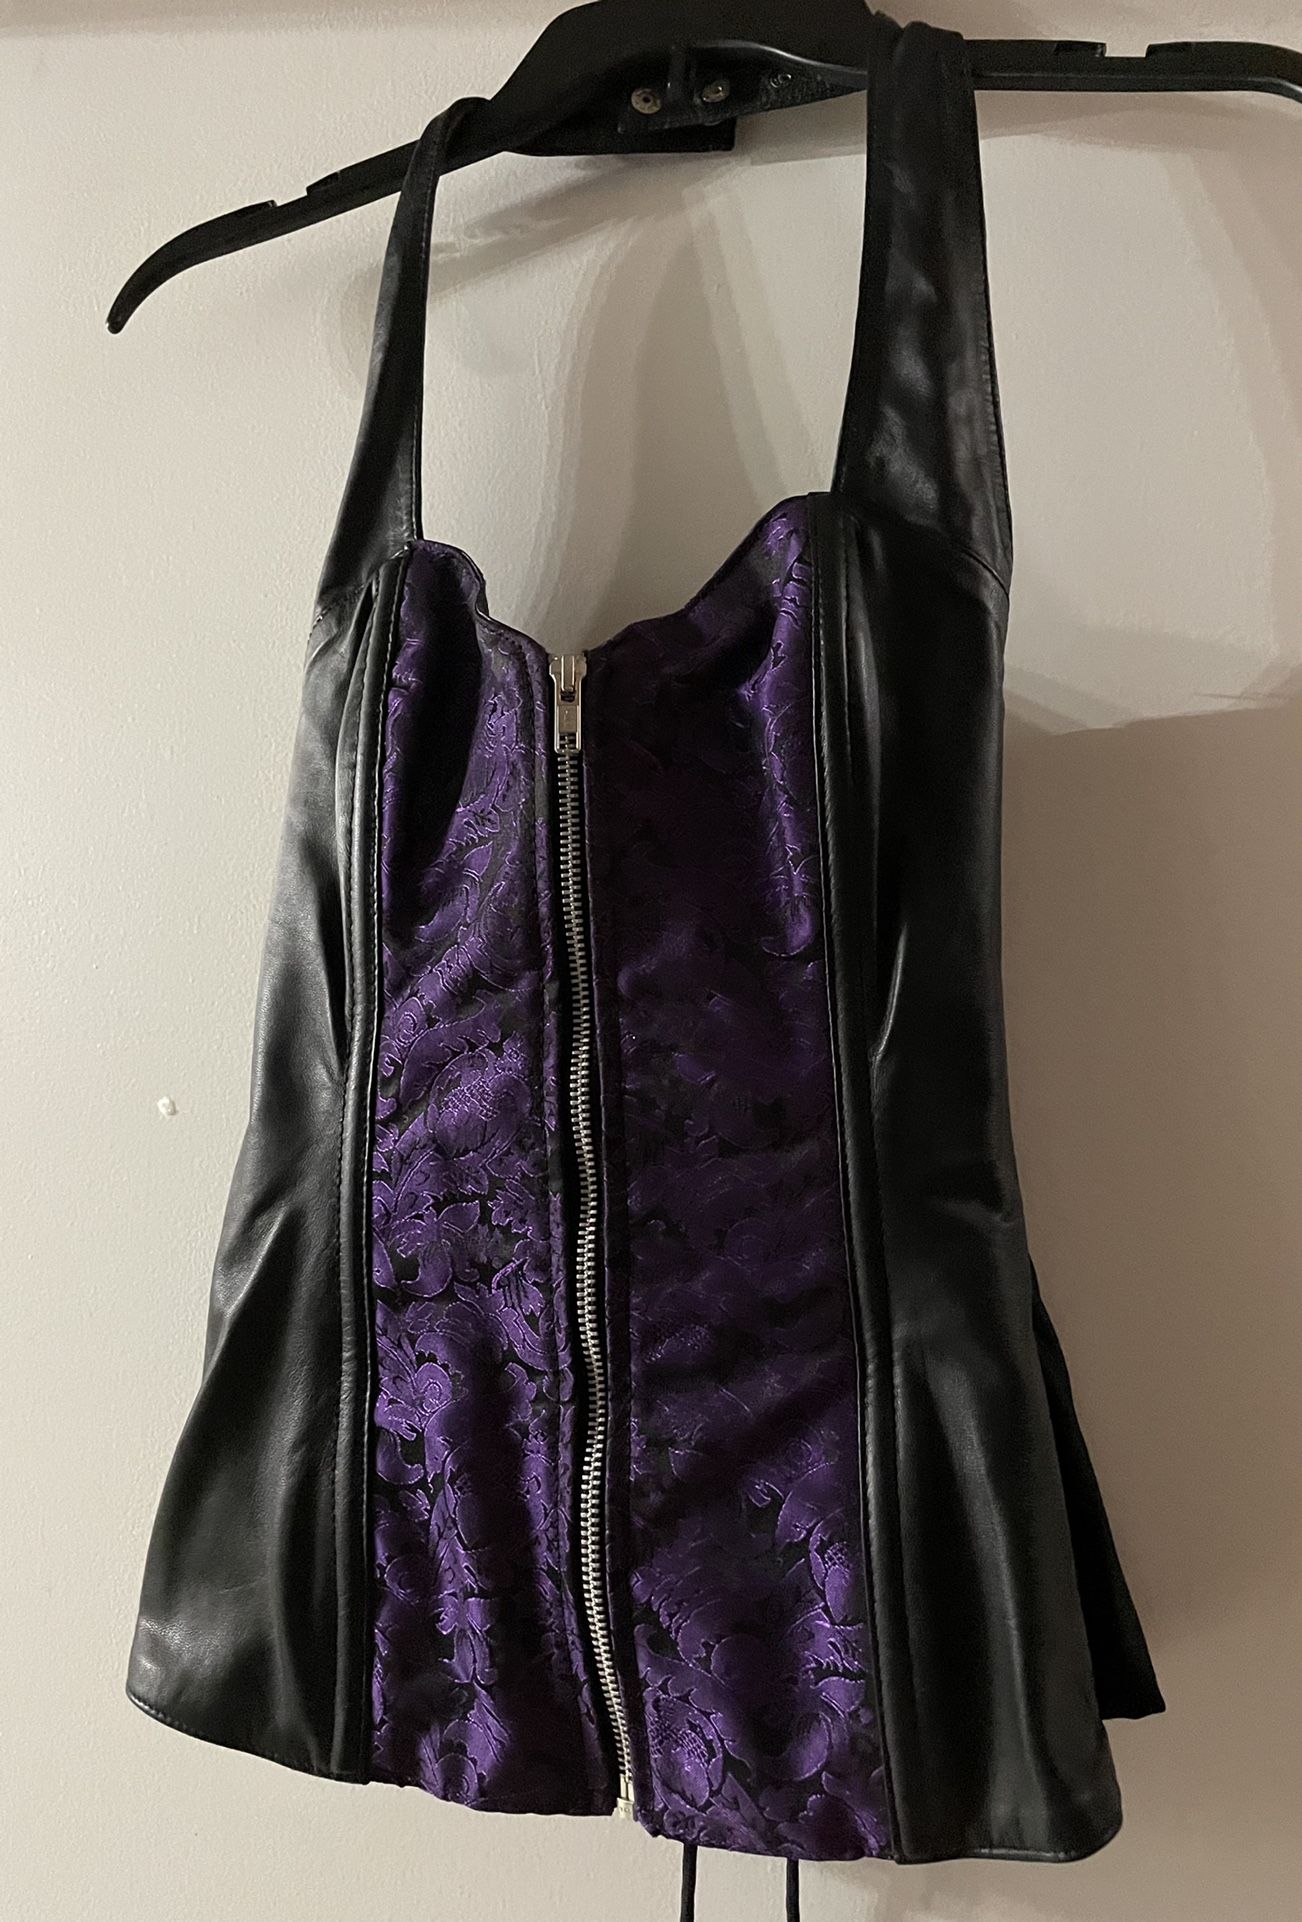 Kookie Black-Purple Leather Corset - Medium